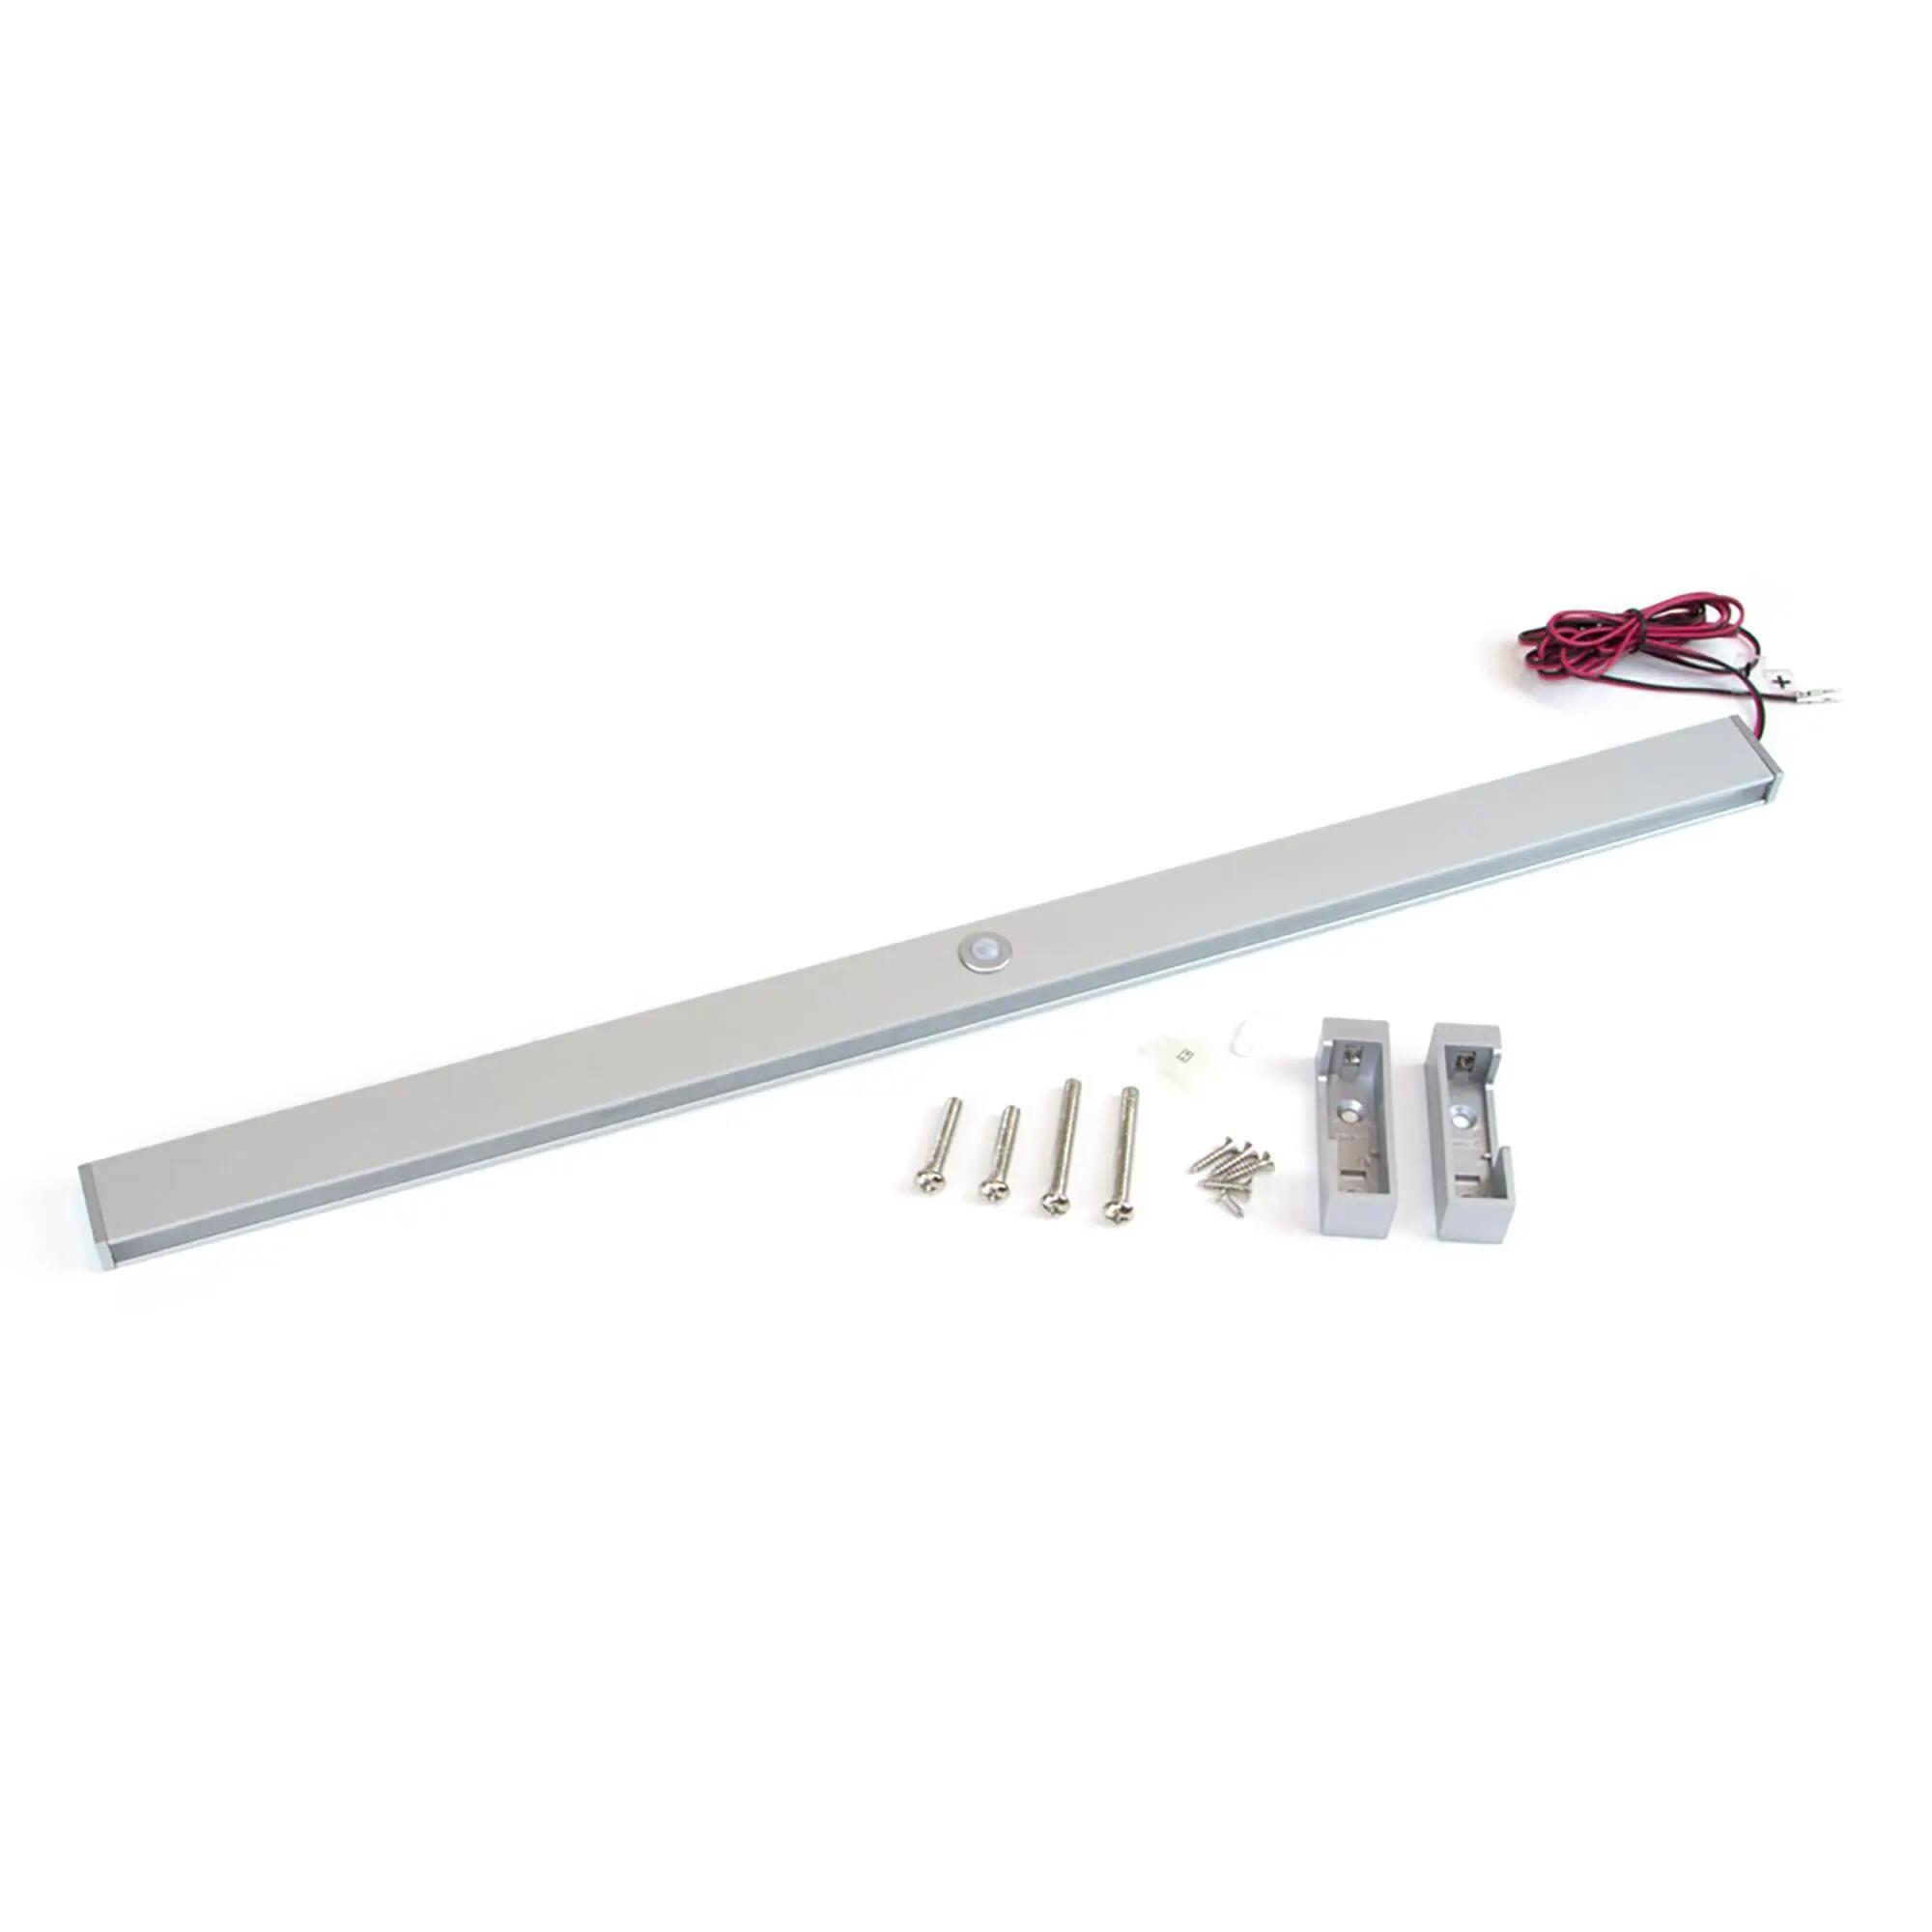 Barra para armario aluminio con luz led y sensor. ancho regulable 55.8-70.8cm